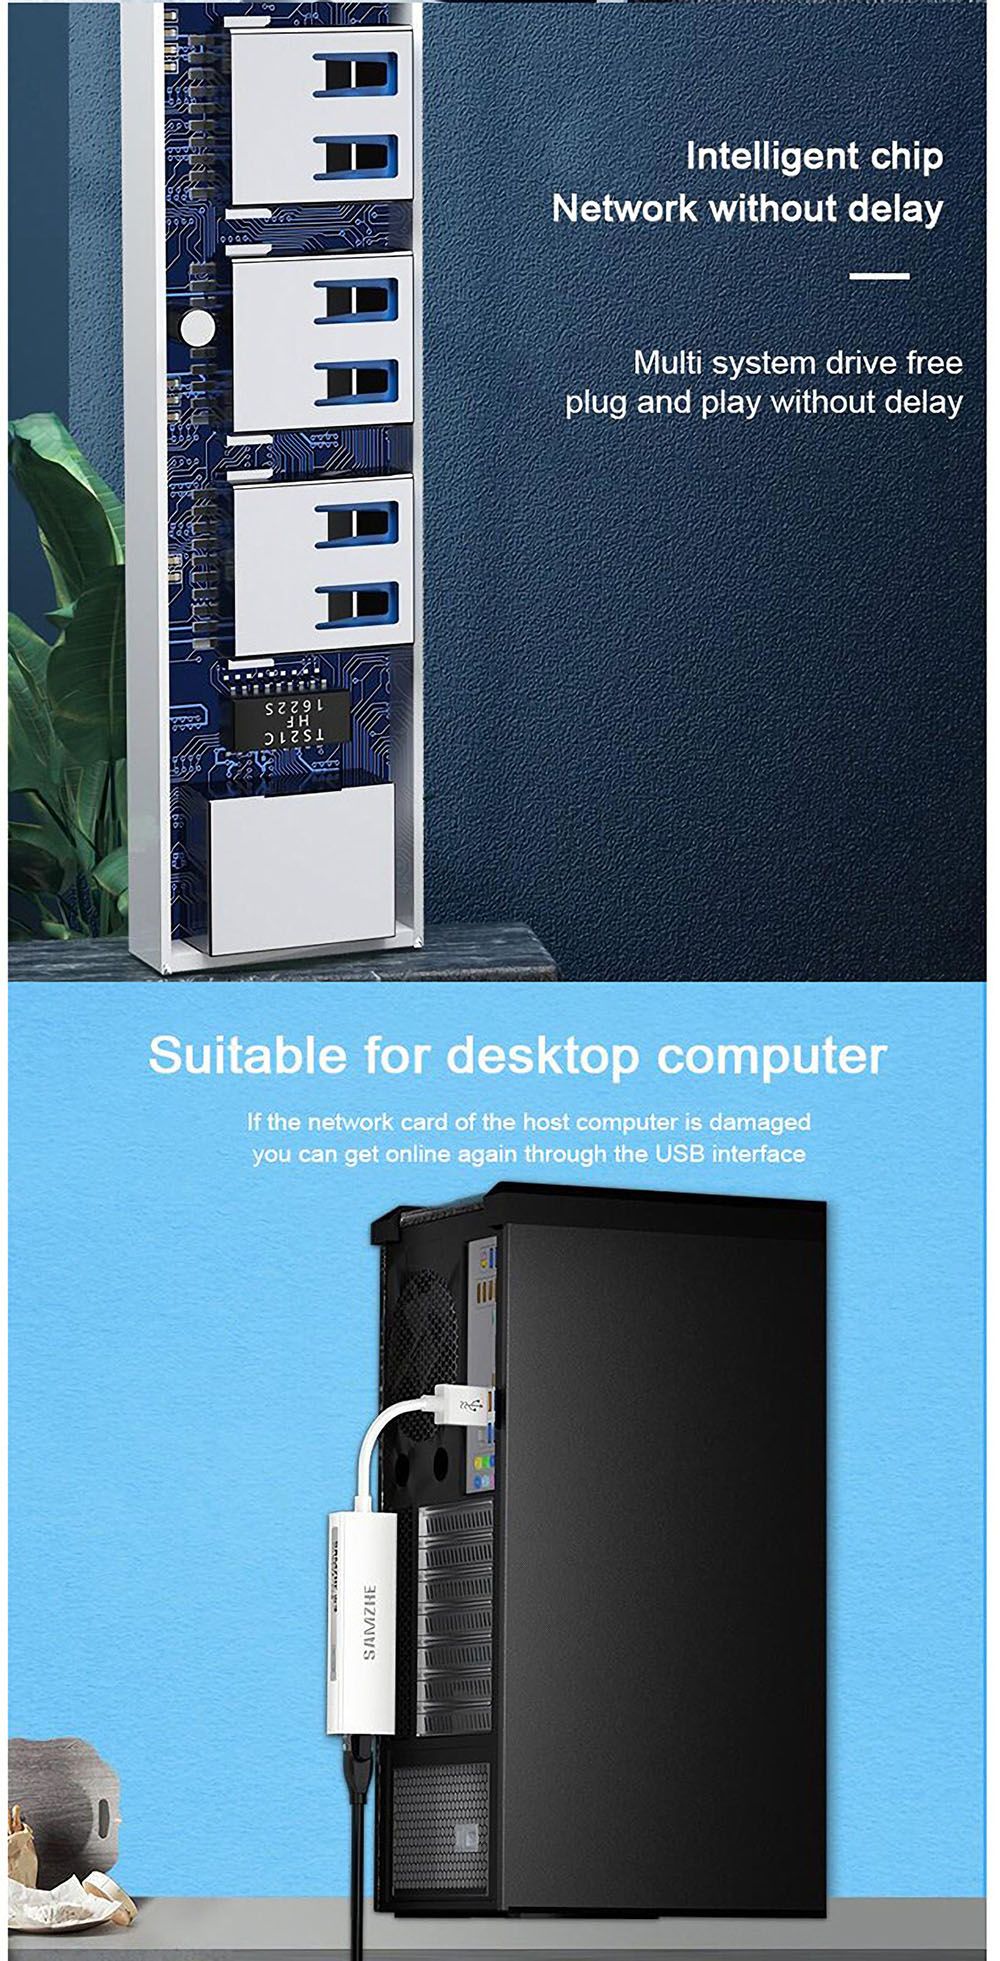 SAMZHE-3-Port-USB20-Hub-Splitter-RJ45-100M-Ethernet-Adapter-Wired-Network-Card-Converter-for-Laptop--1750863